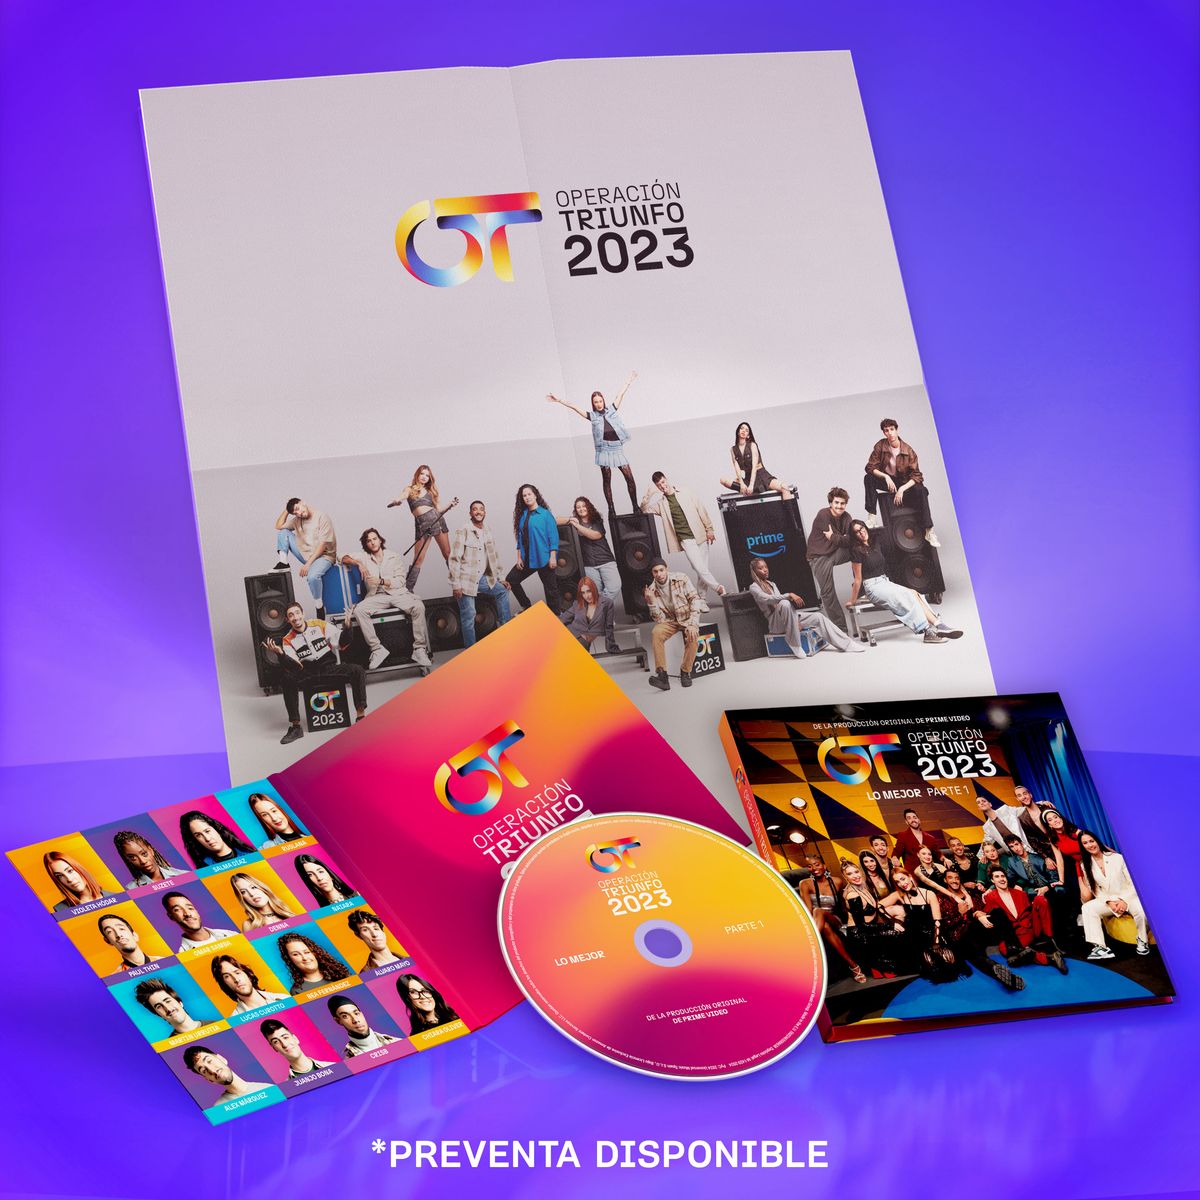 OT 2020': Ya hay fecha para las primeras firmas de discos